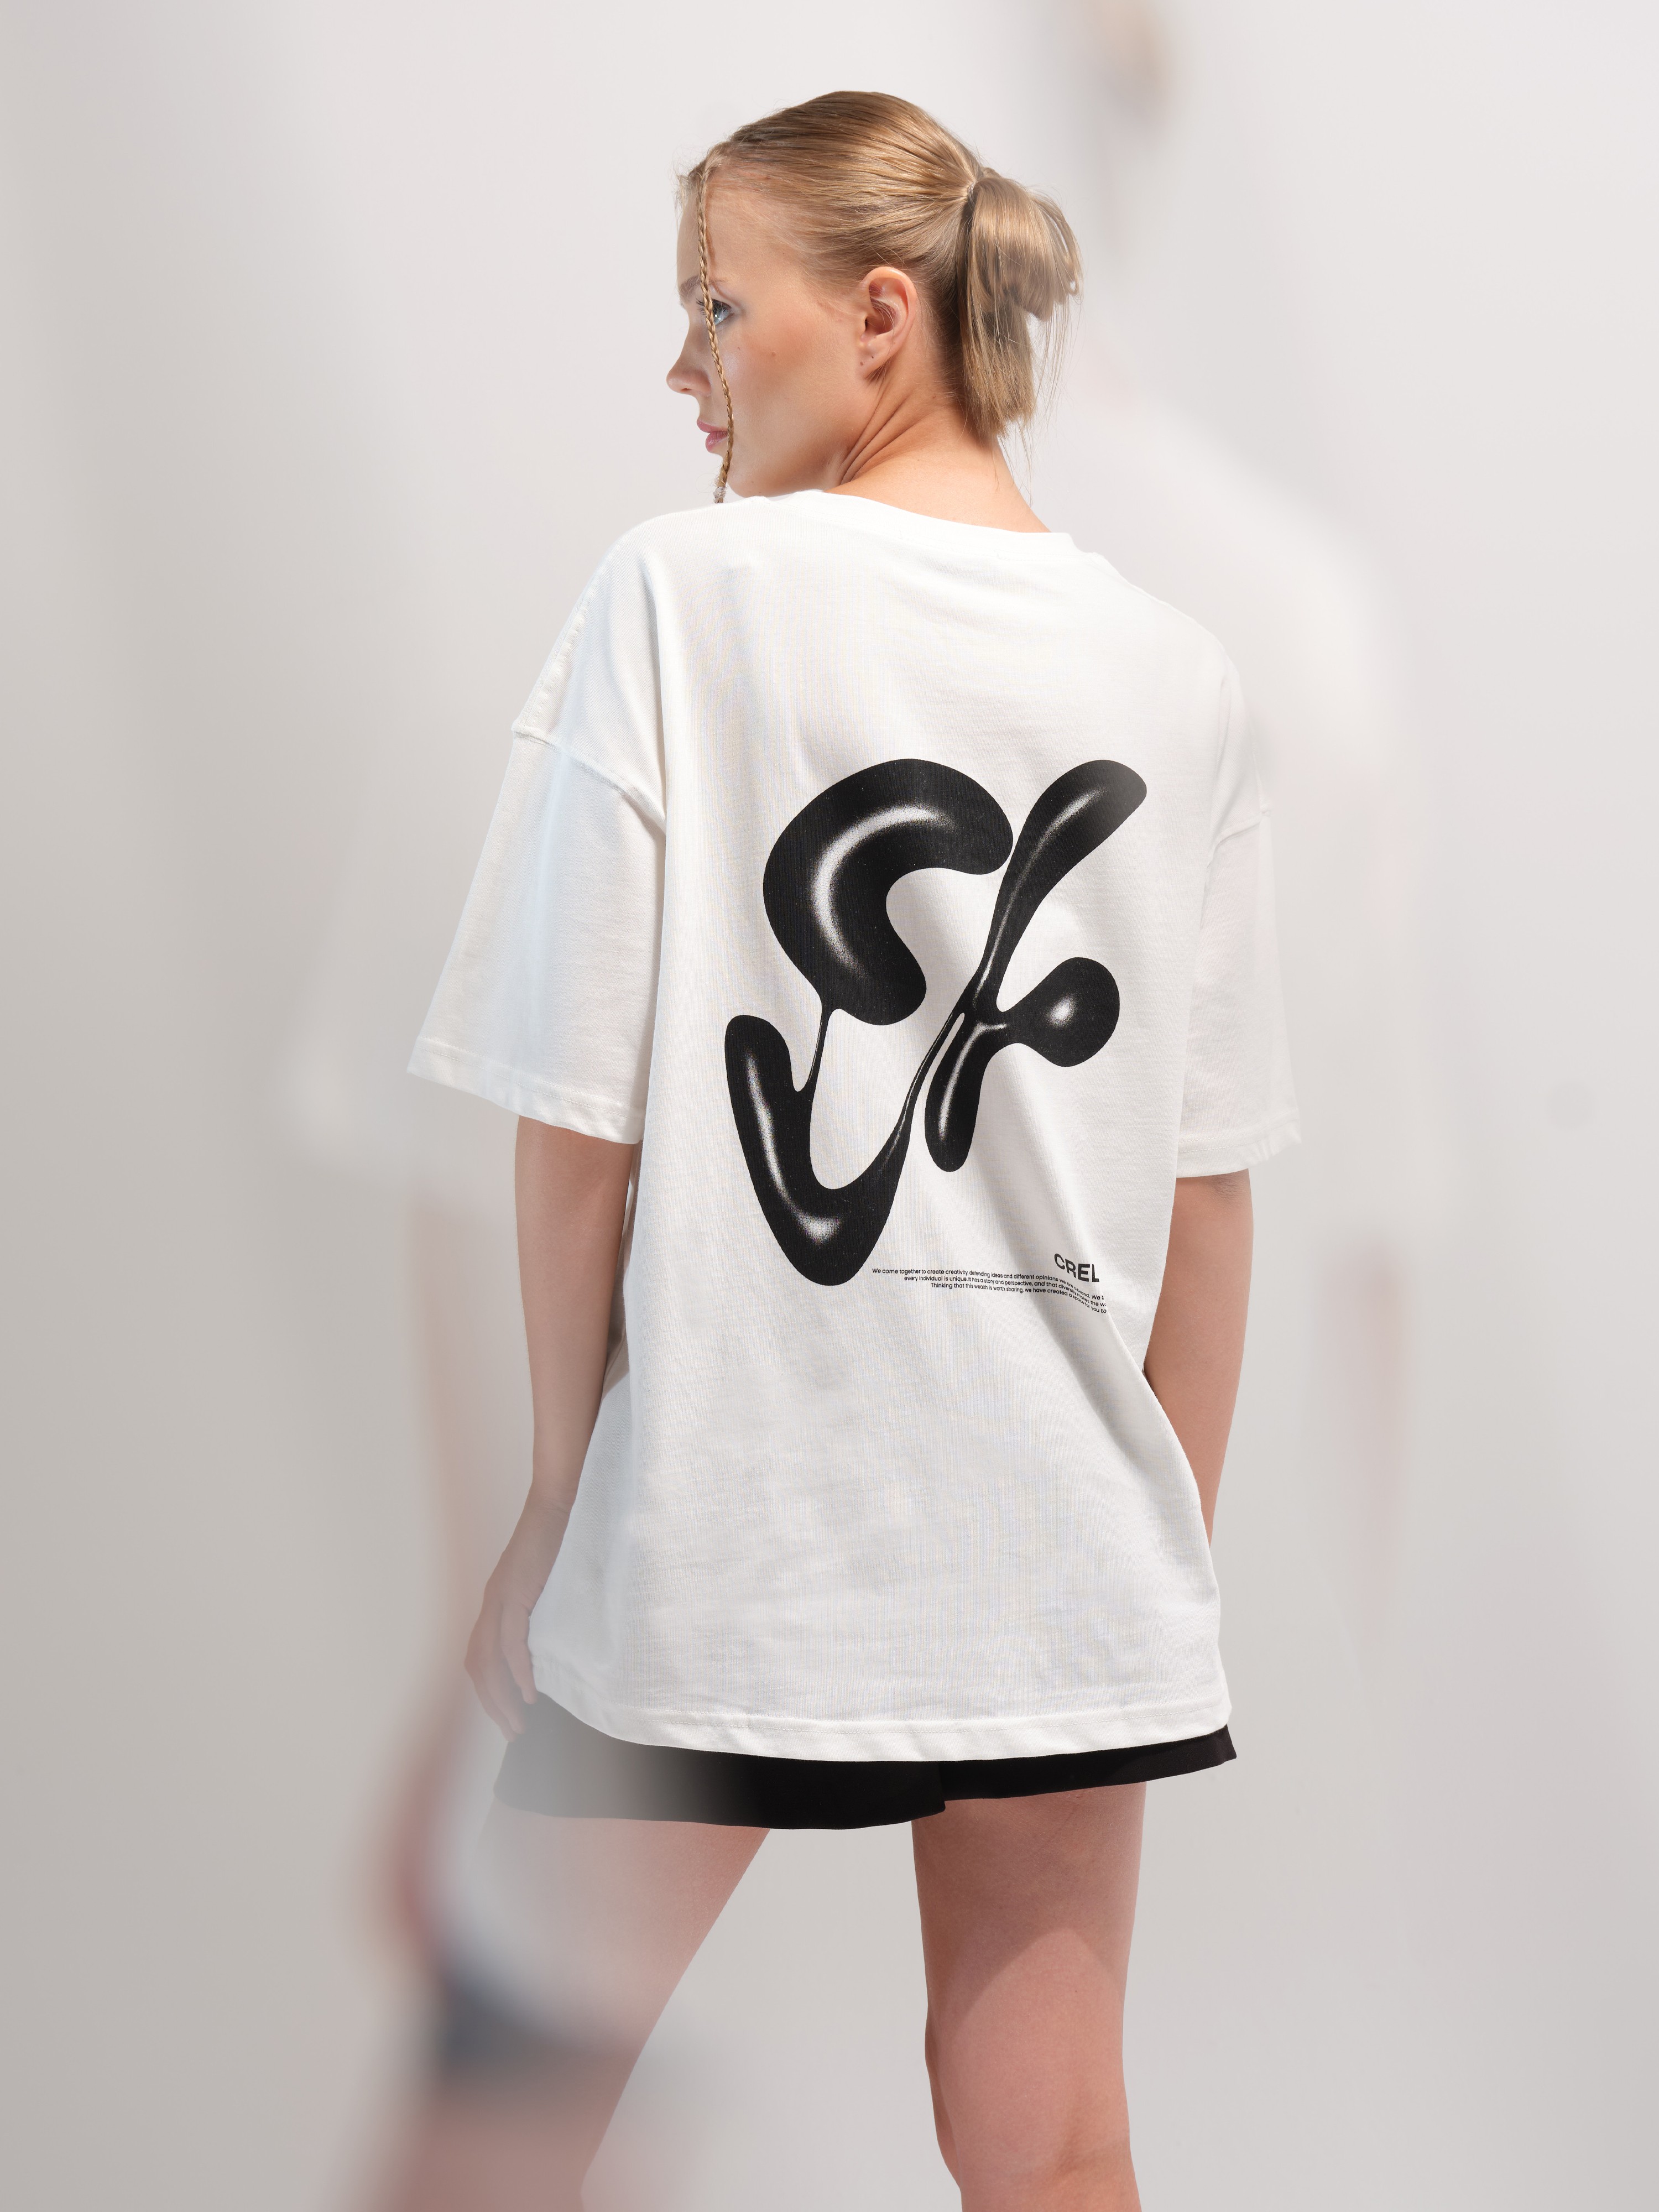 Kadın Clv Manifest Oversize T-shirt